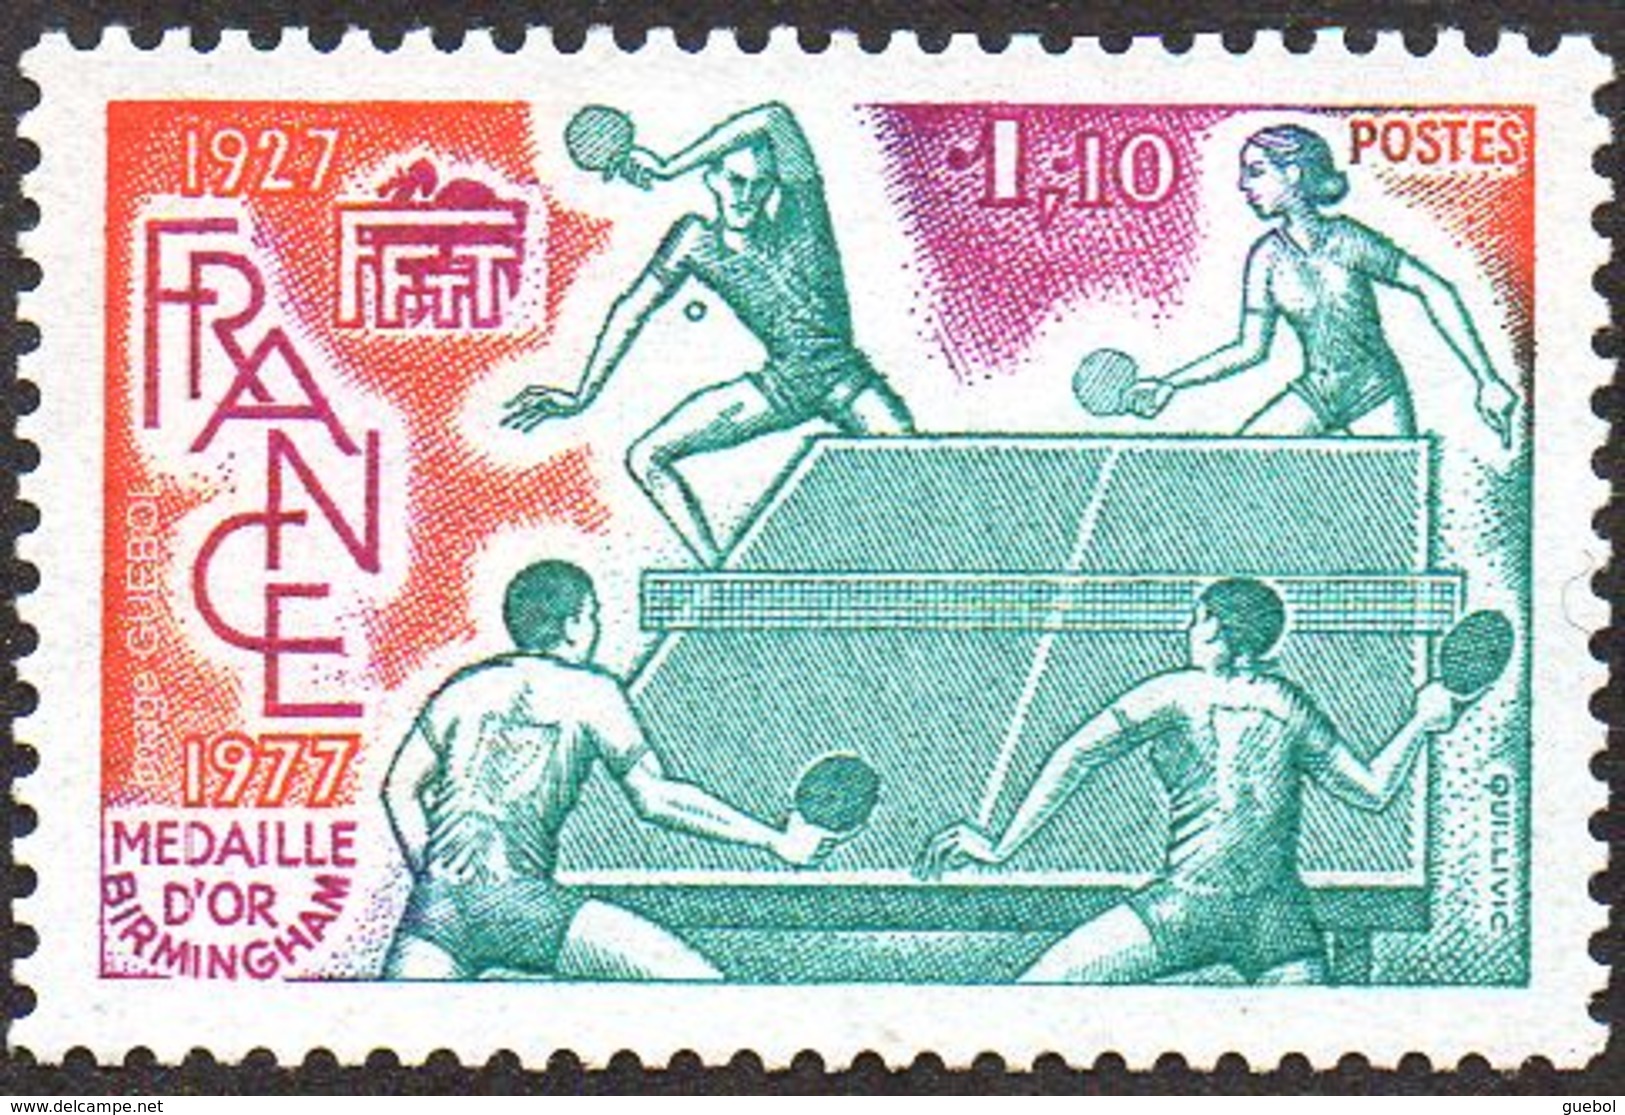 France Sport N° 1961 ** Tennis De Table - Raquettes - Balle - Tennis Tavolo